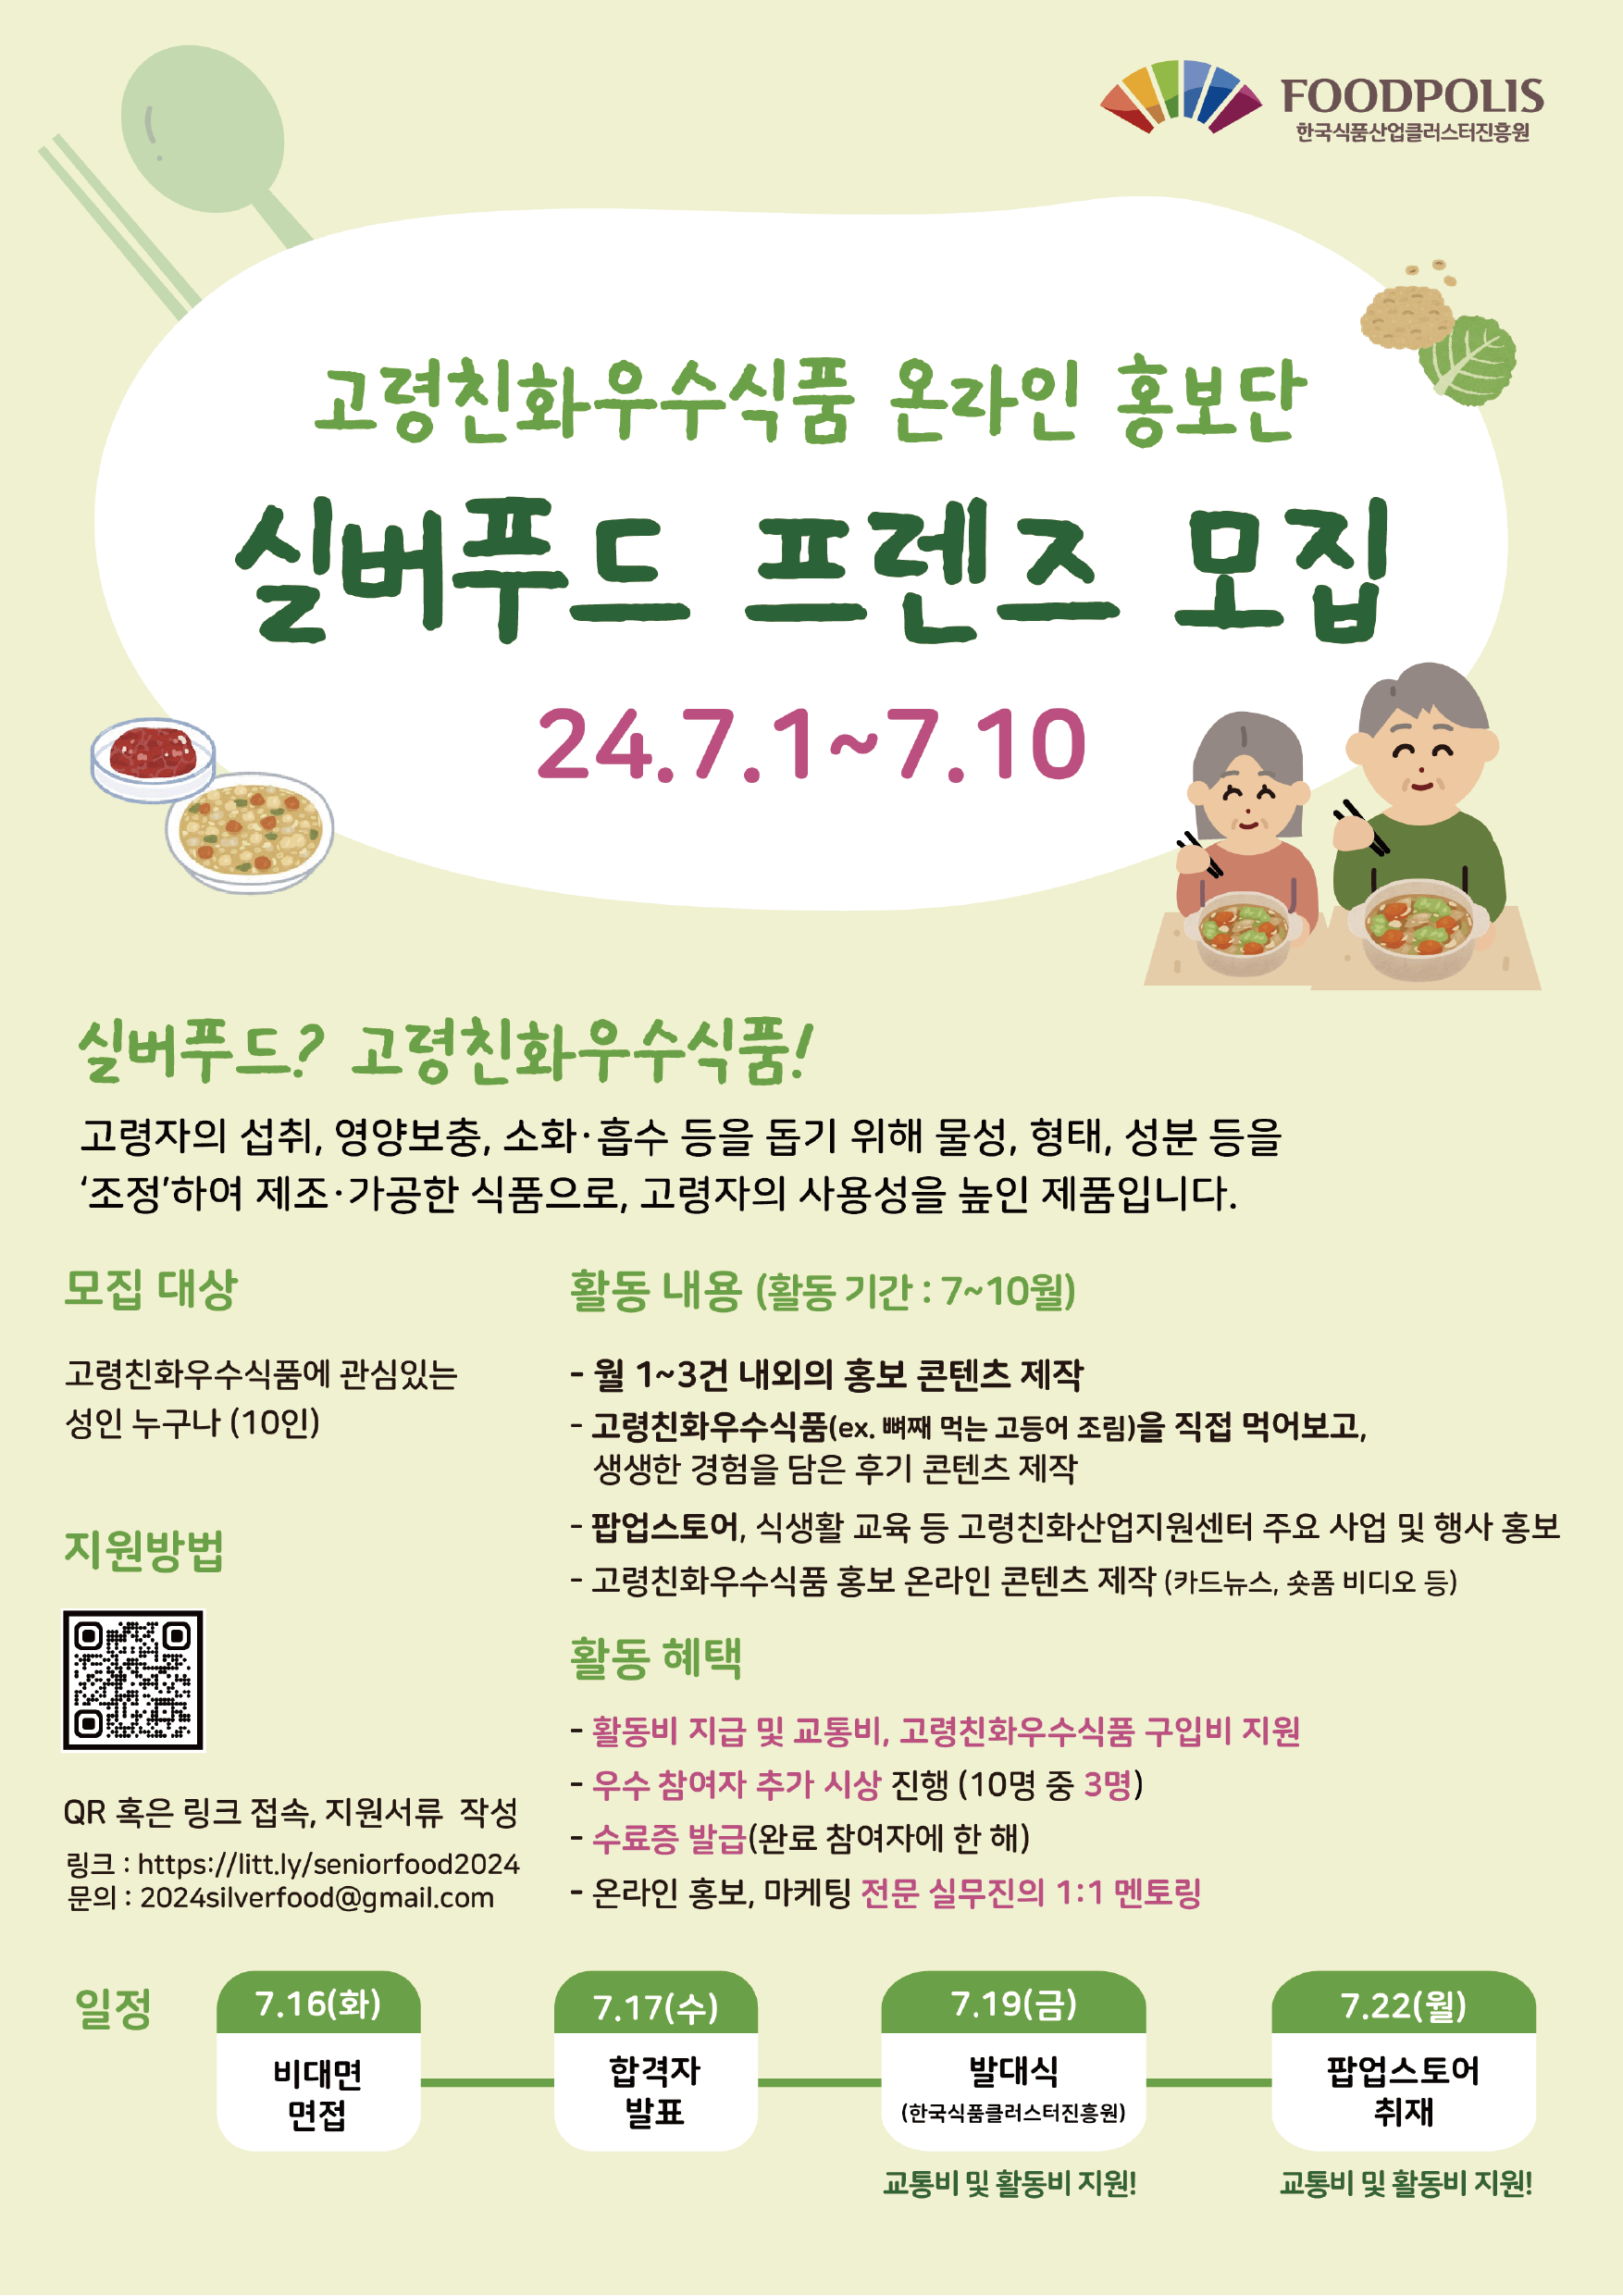 고령친화식품 온라인 홍보단 '실버 푸드 프렌즈' 모집